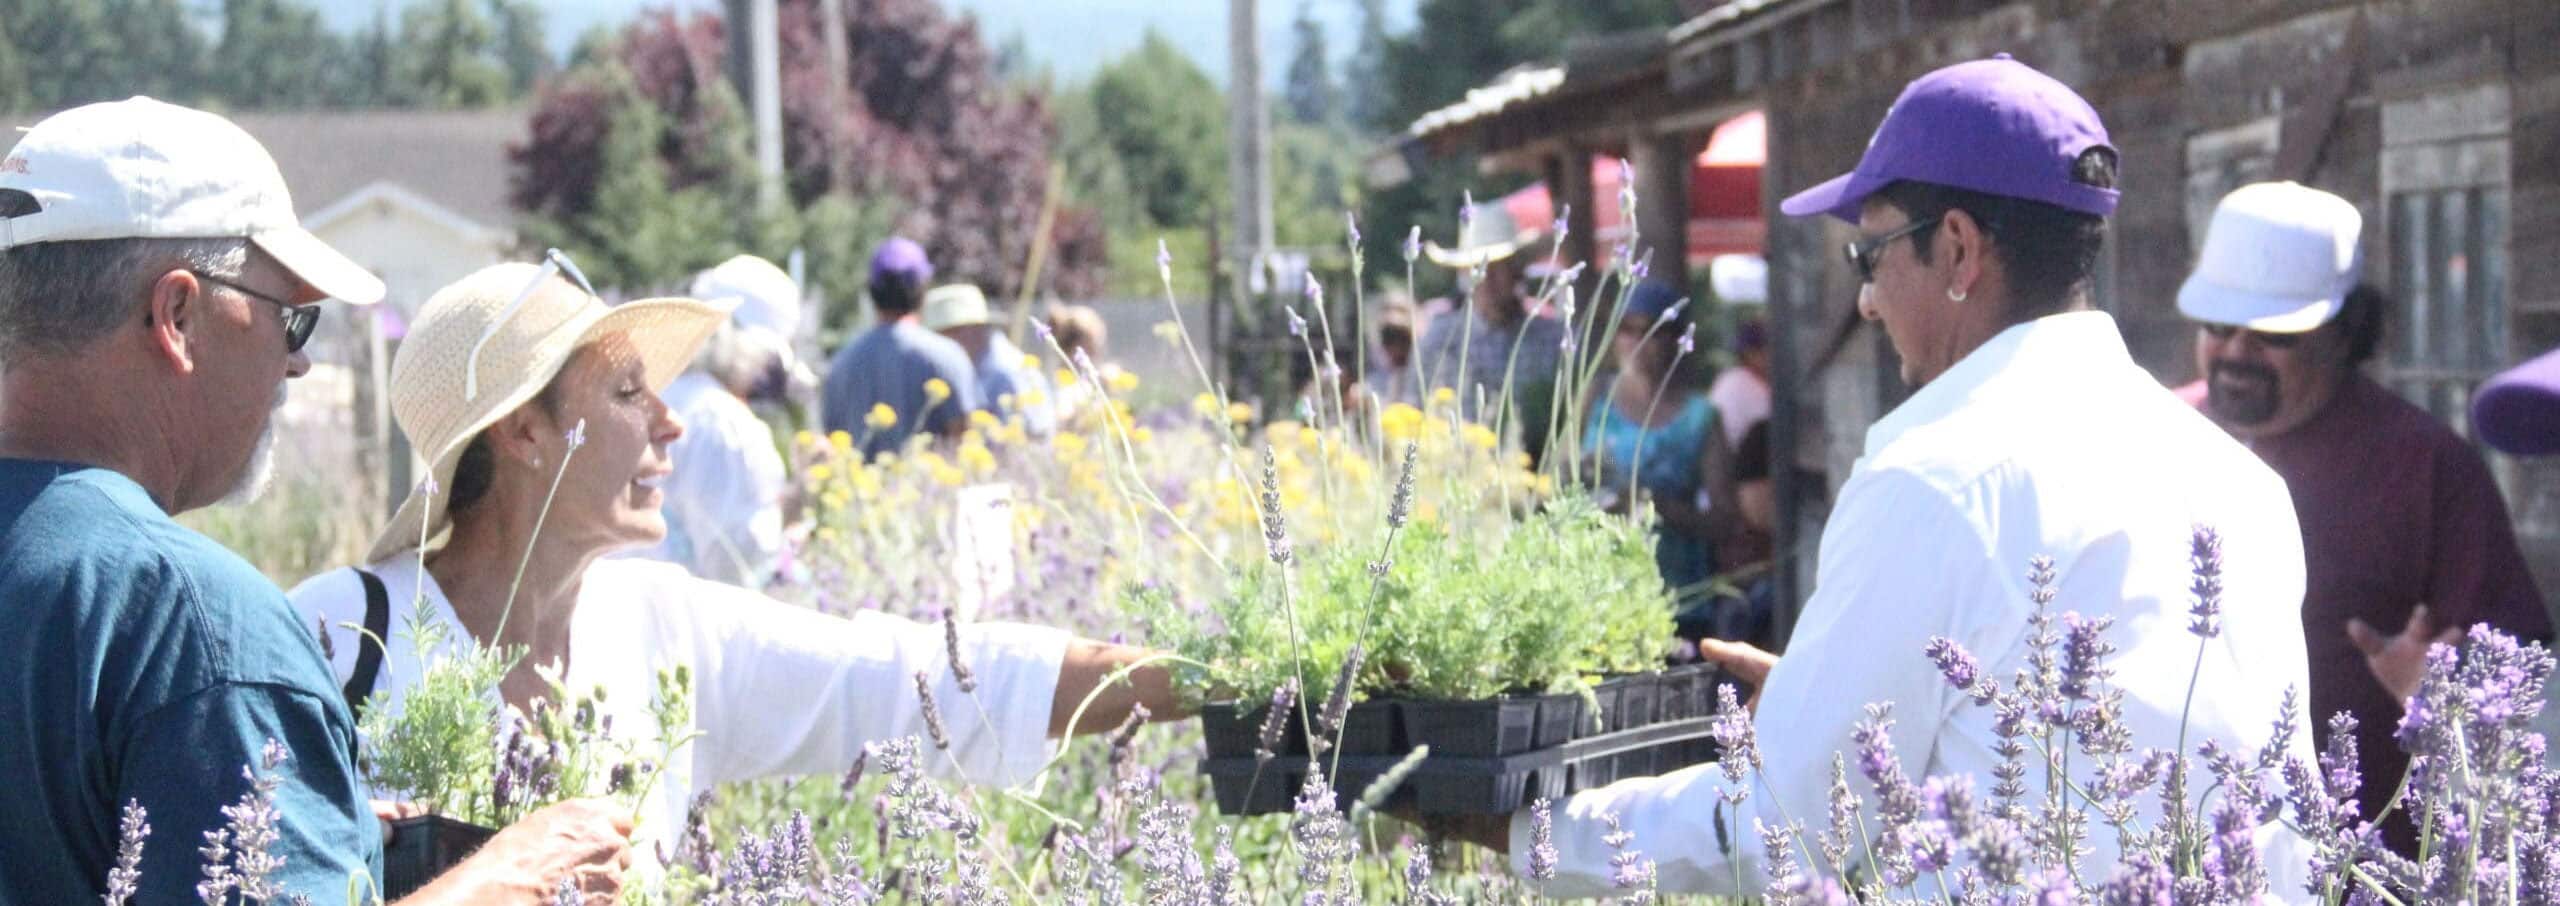 Open air lavender market